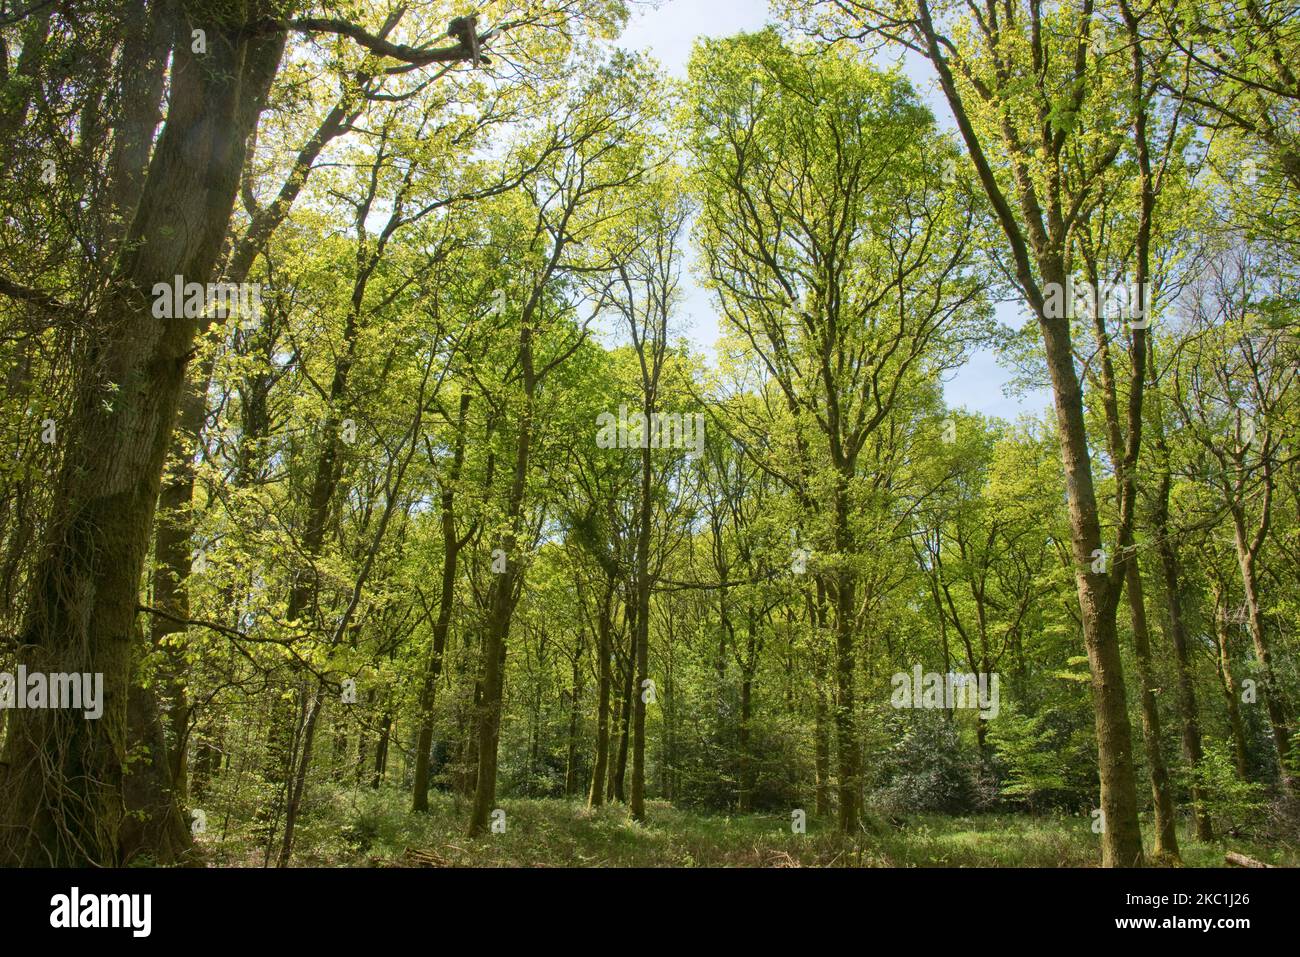 Árboles de haya común madura (Fagus sylvatica) en densos bosques de Savernake Forest con hojas de primavera jóvenes verde ácido a finales de la primavera, Wiltshire, mayo Foto de stock